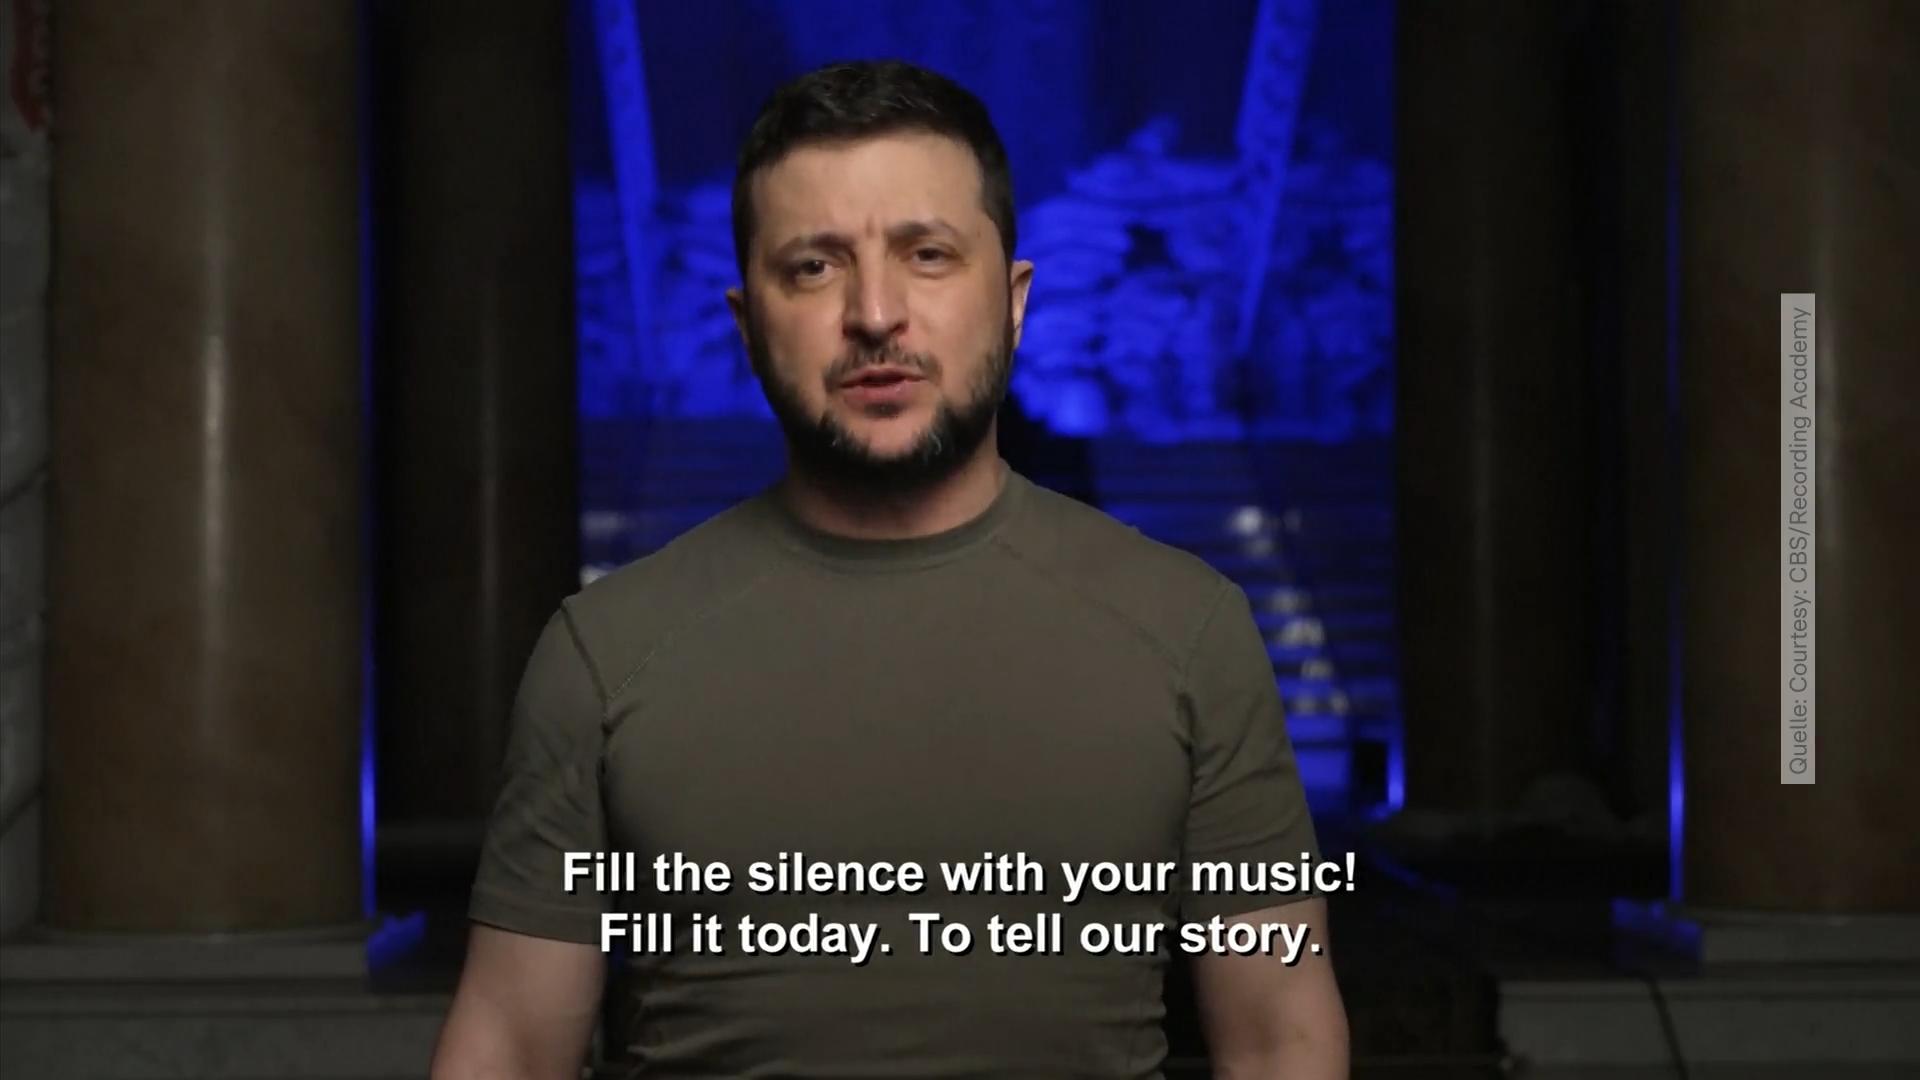 Selenskyj spricht bei den Grammys Emotionale Video-Botschaft